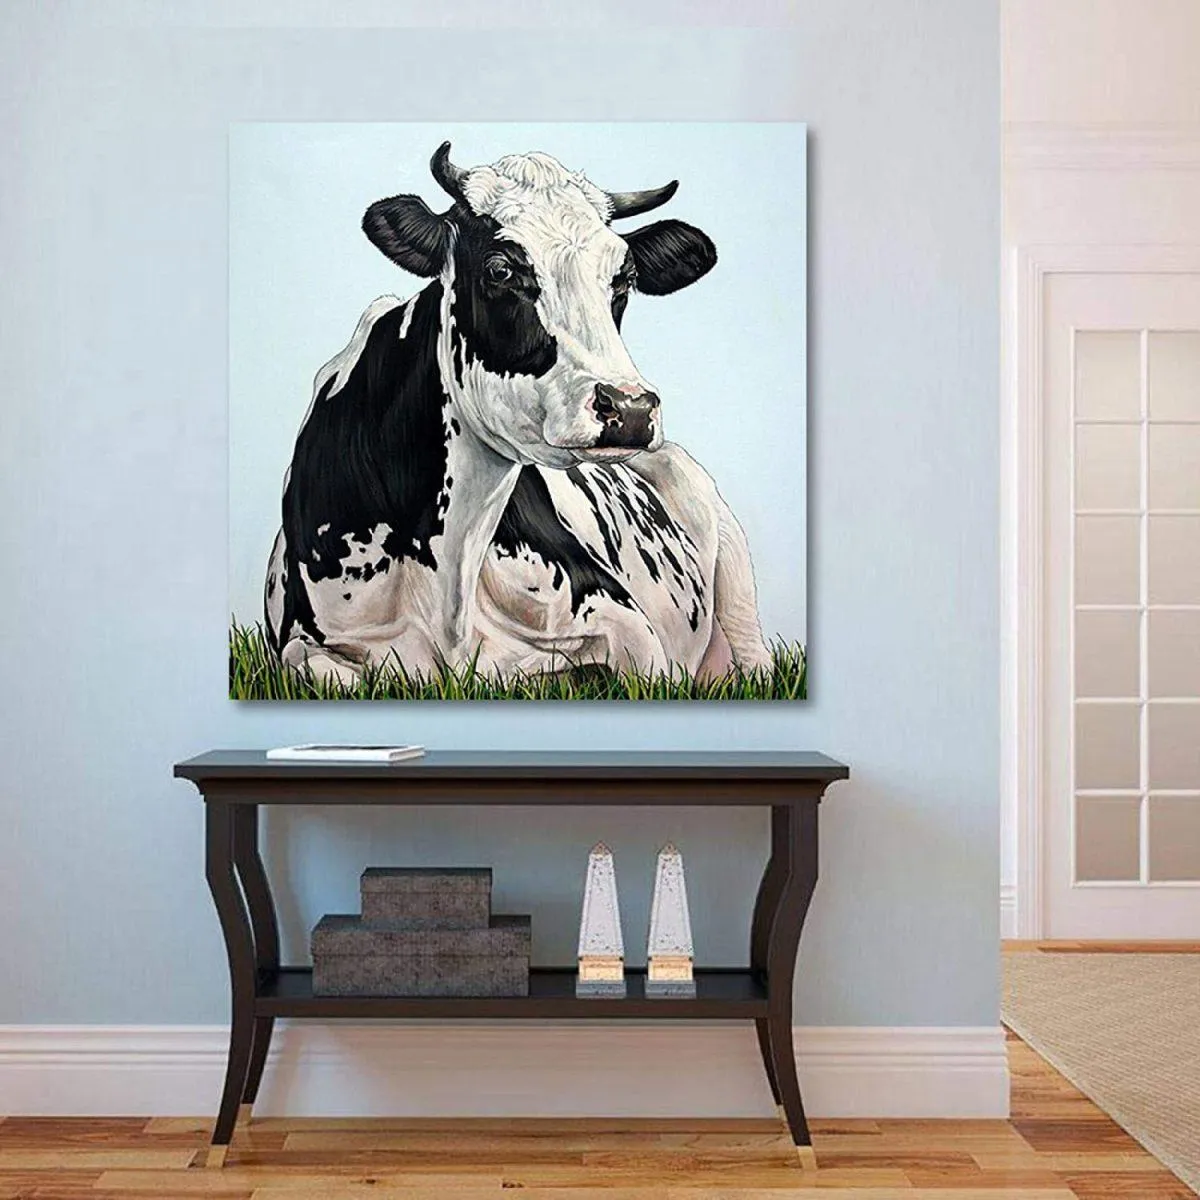 Картина коровы в прихожей